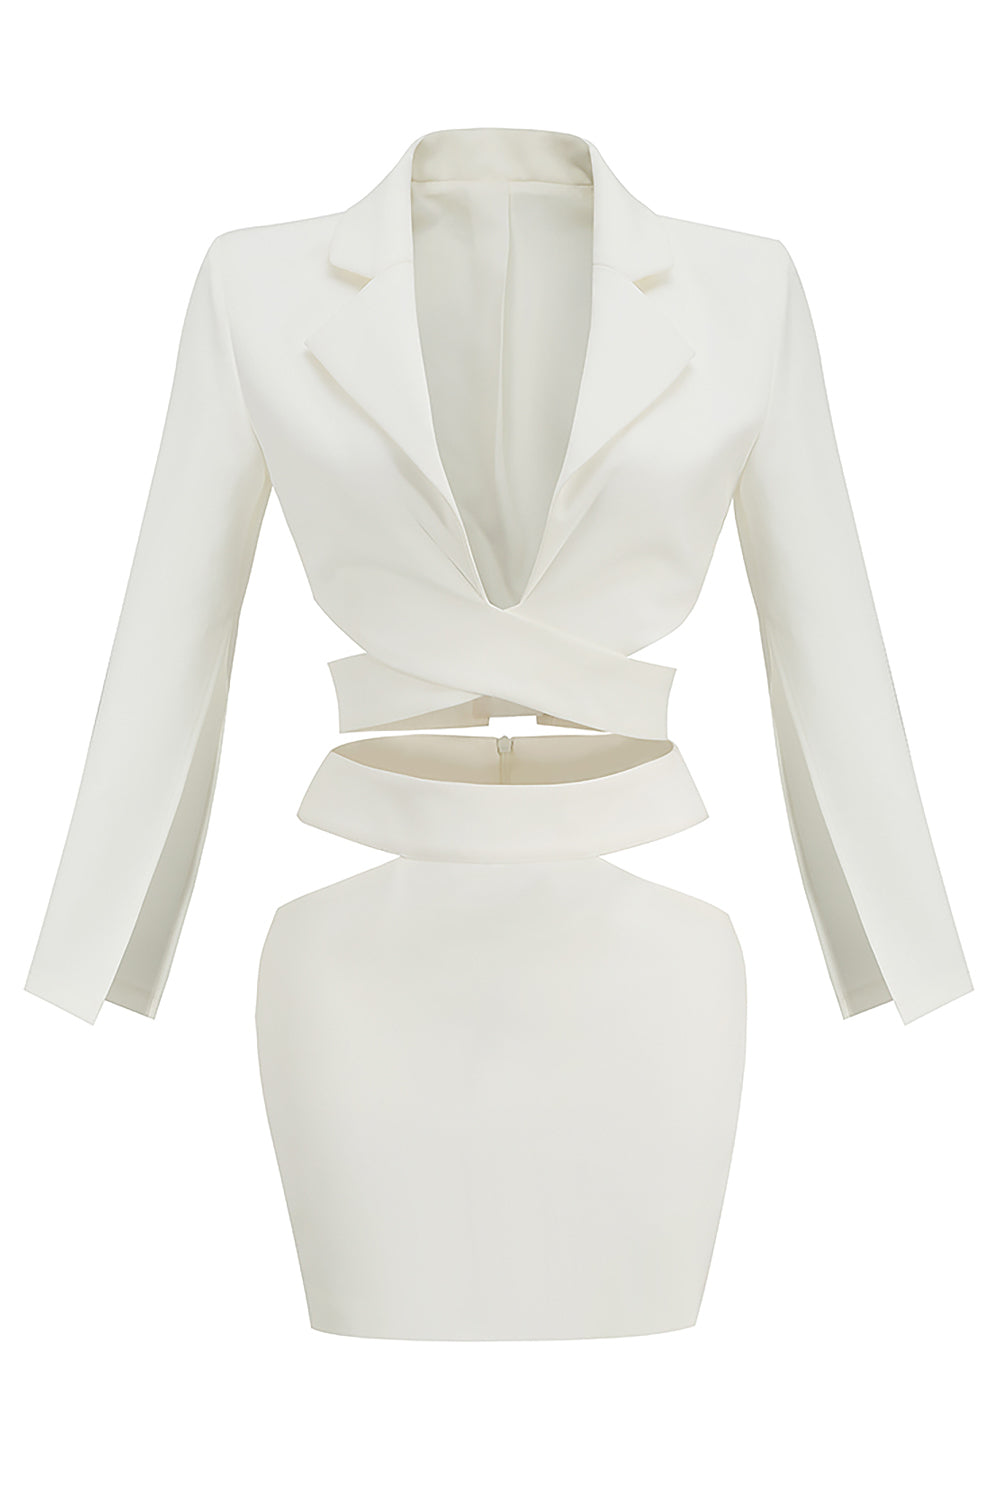 Traje blanco de dos piezas con abrigo y falda de manga larga con cuello en V